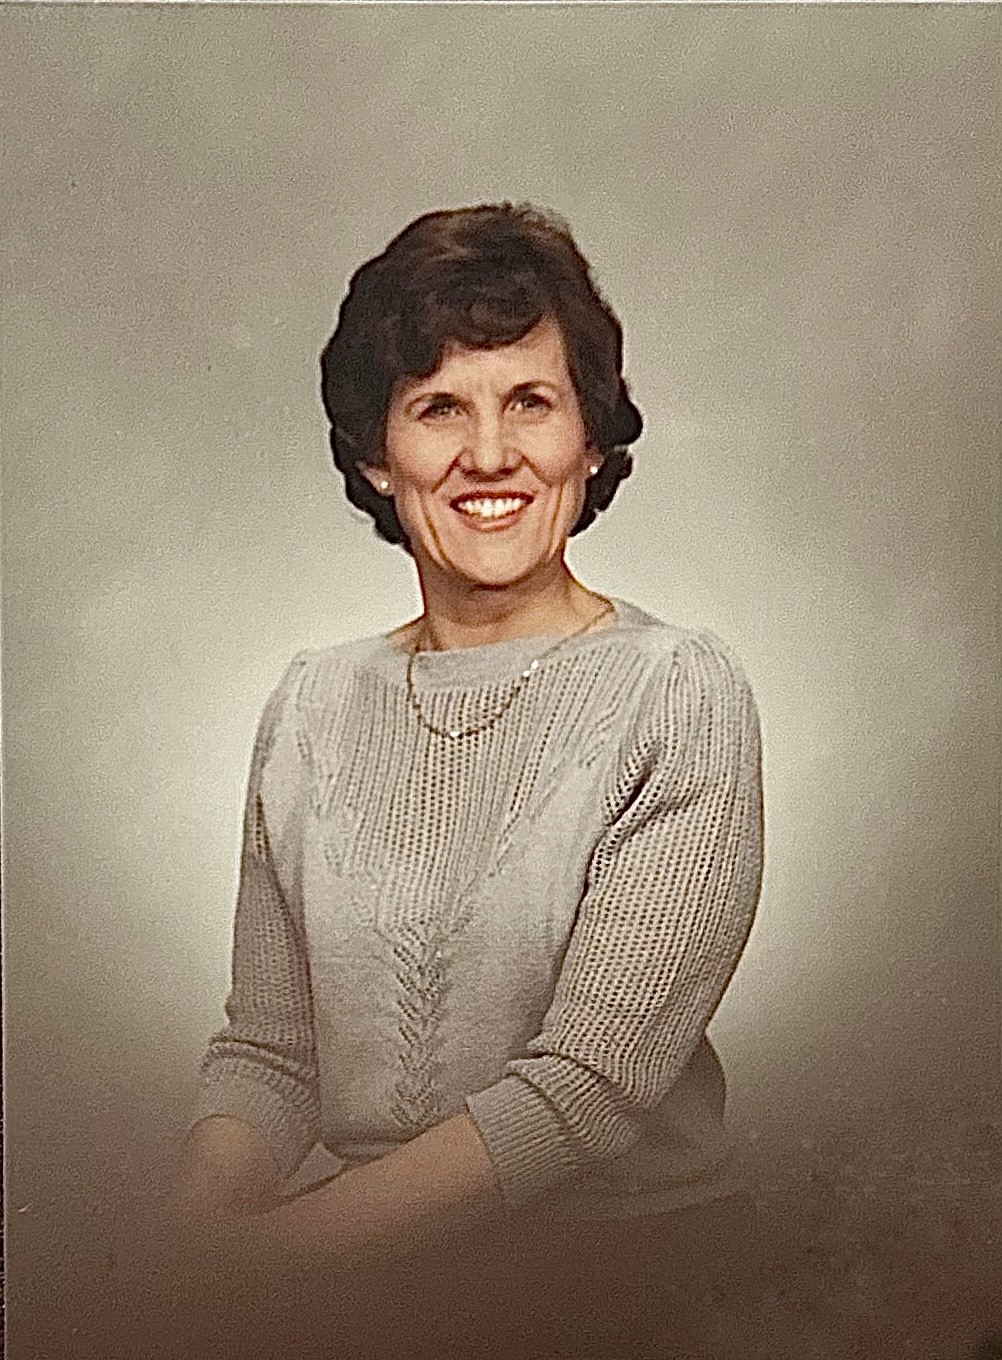 Obituary for Kay Bomar